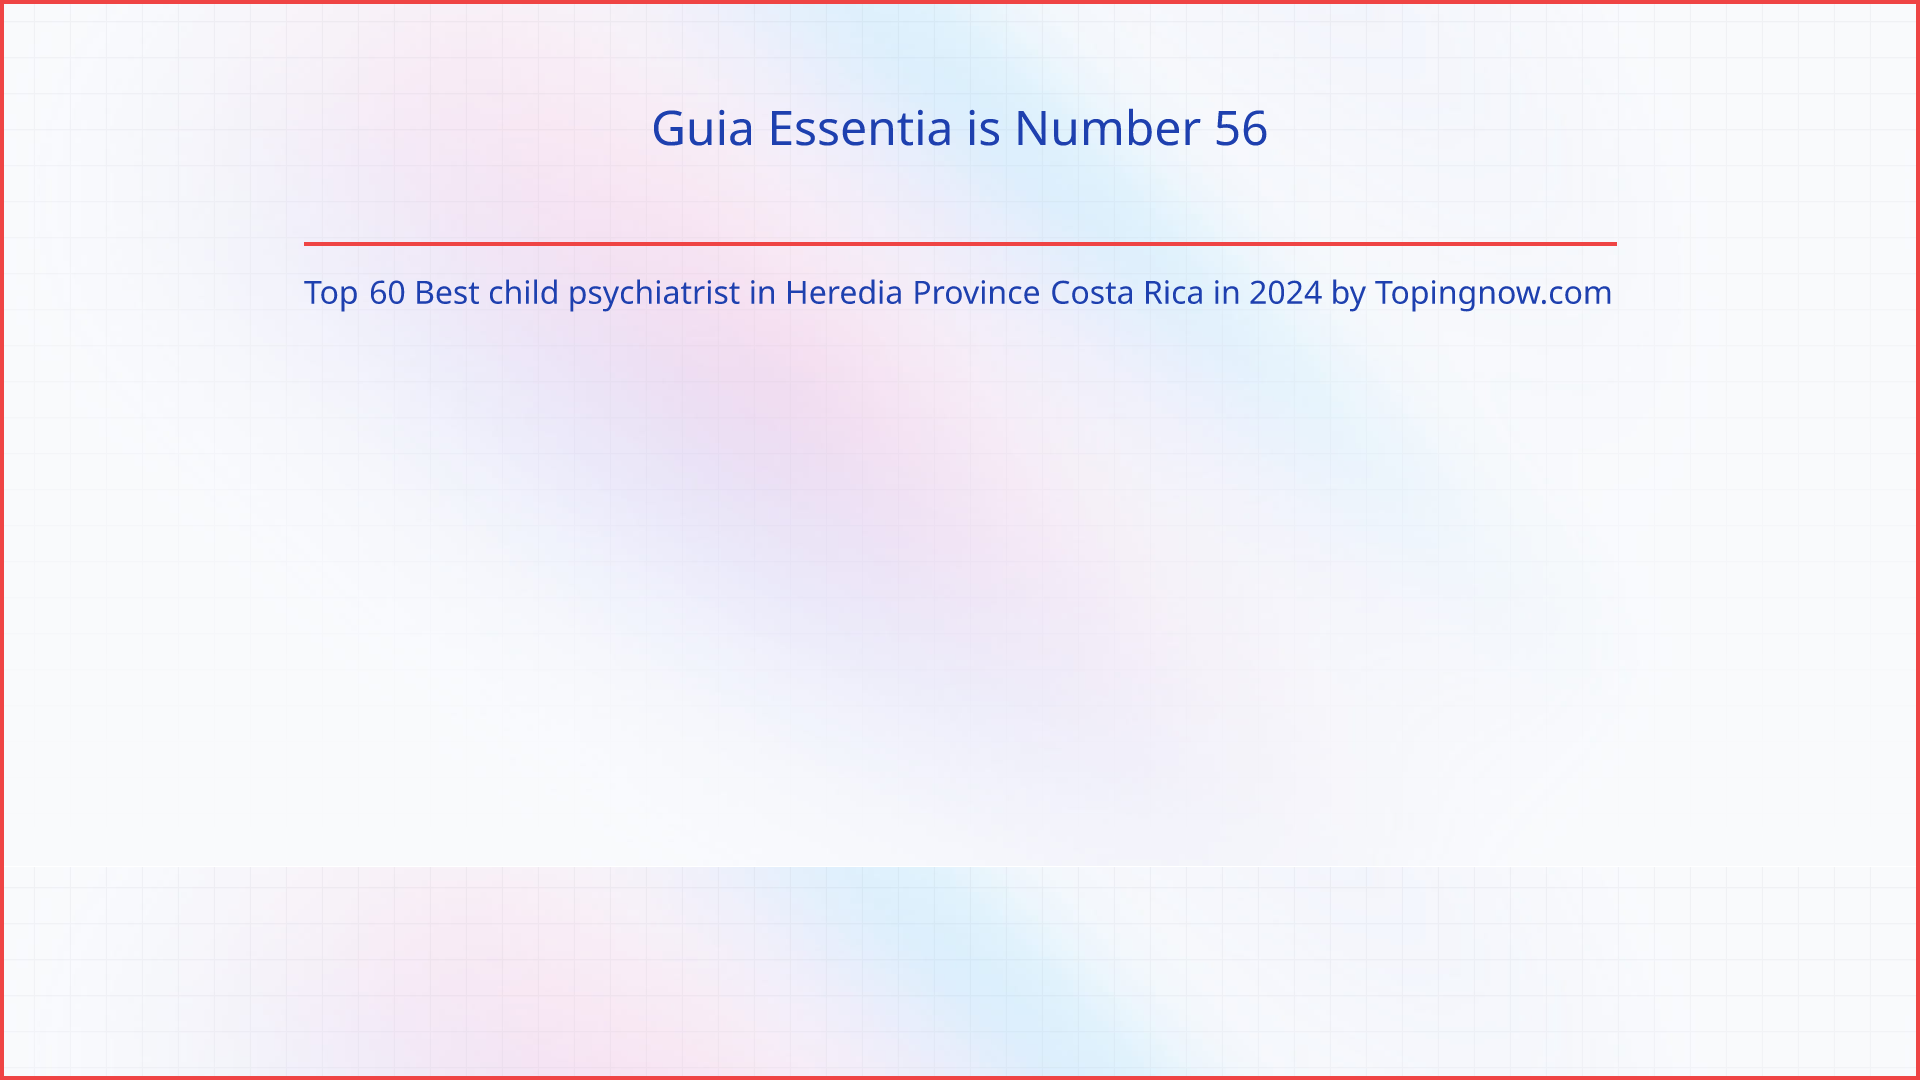 Guia Essentia: Top 60 Best child psychiatrist in Heredia Province Costa Rica in 2024